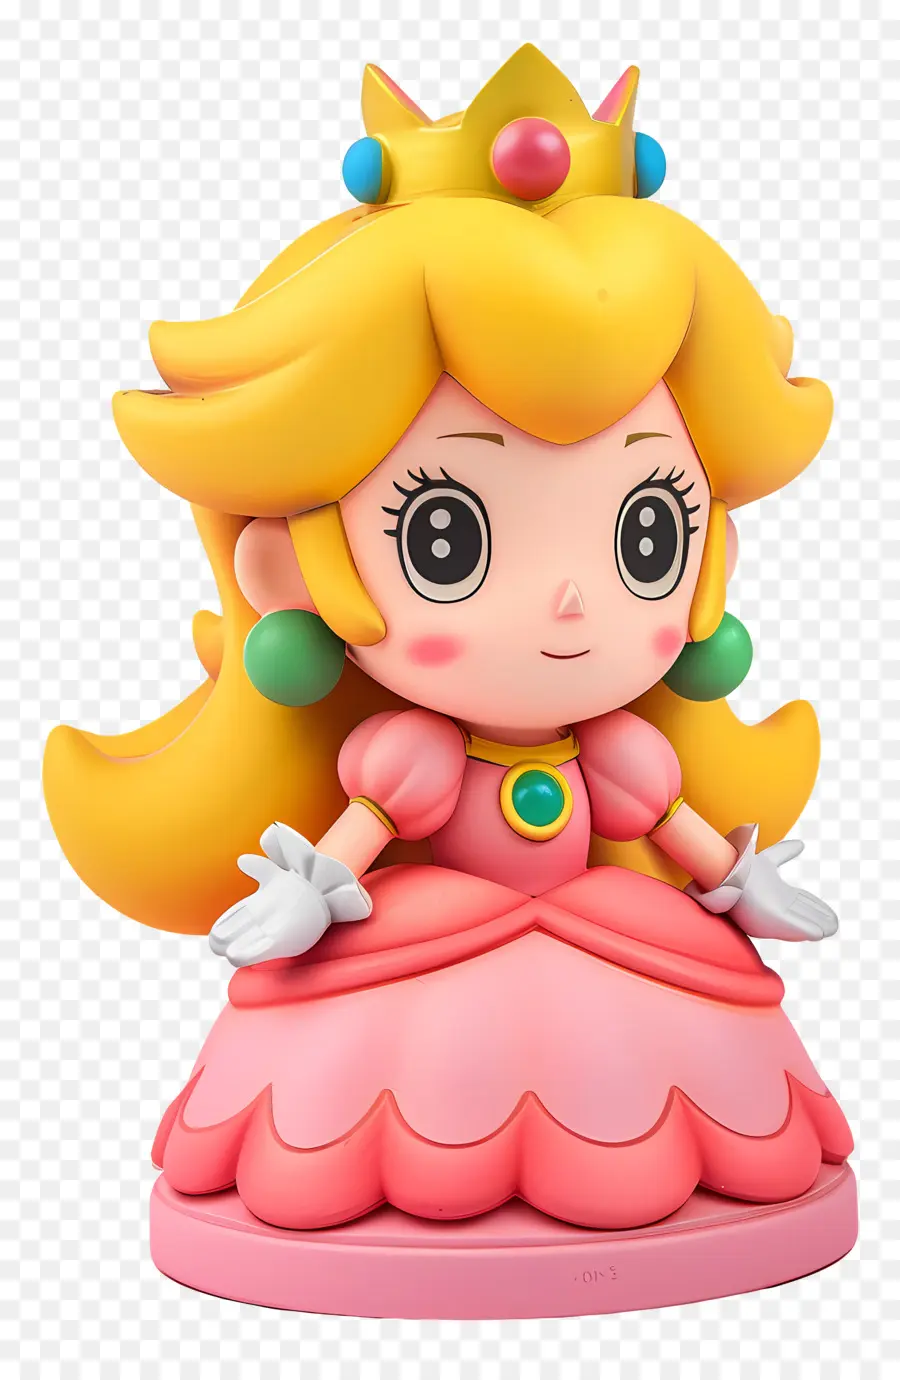 Prinzessin Peach - Pink Figur mit Tiara und geschlossenen Augen